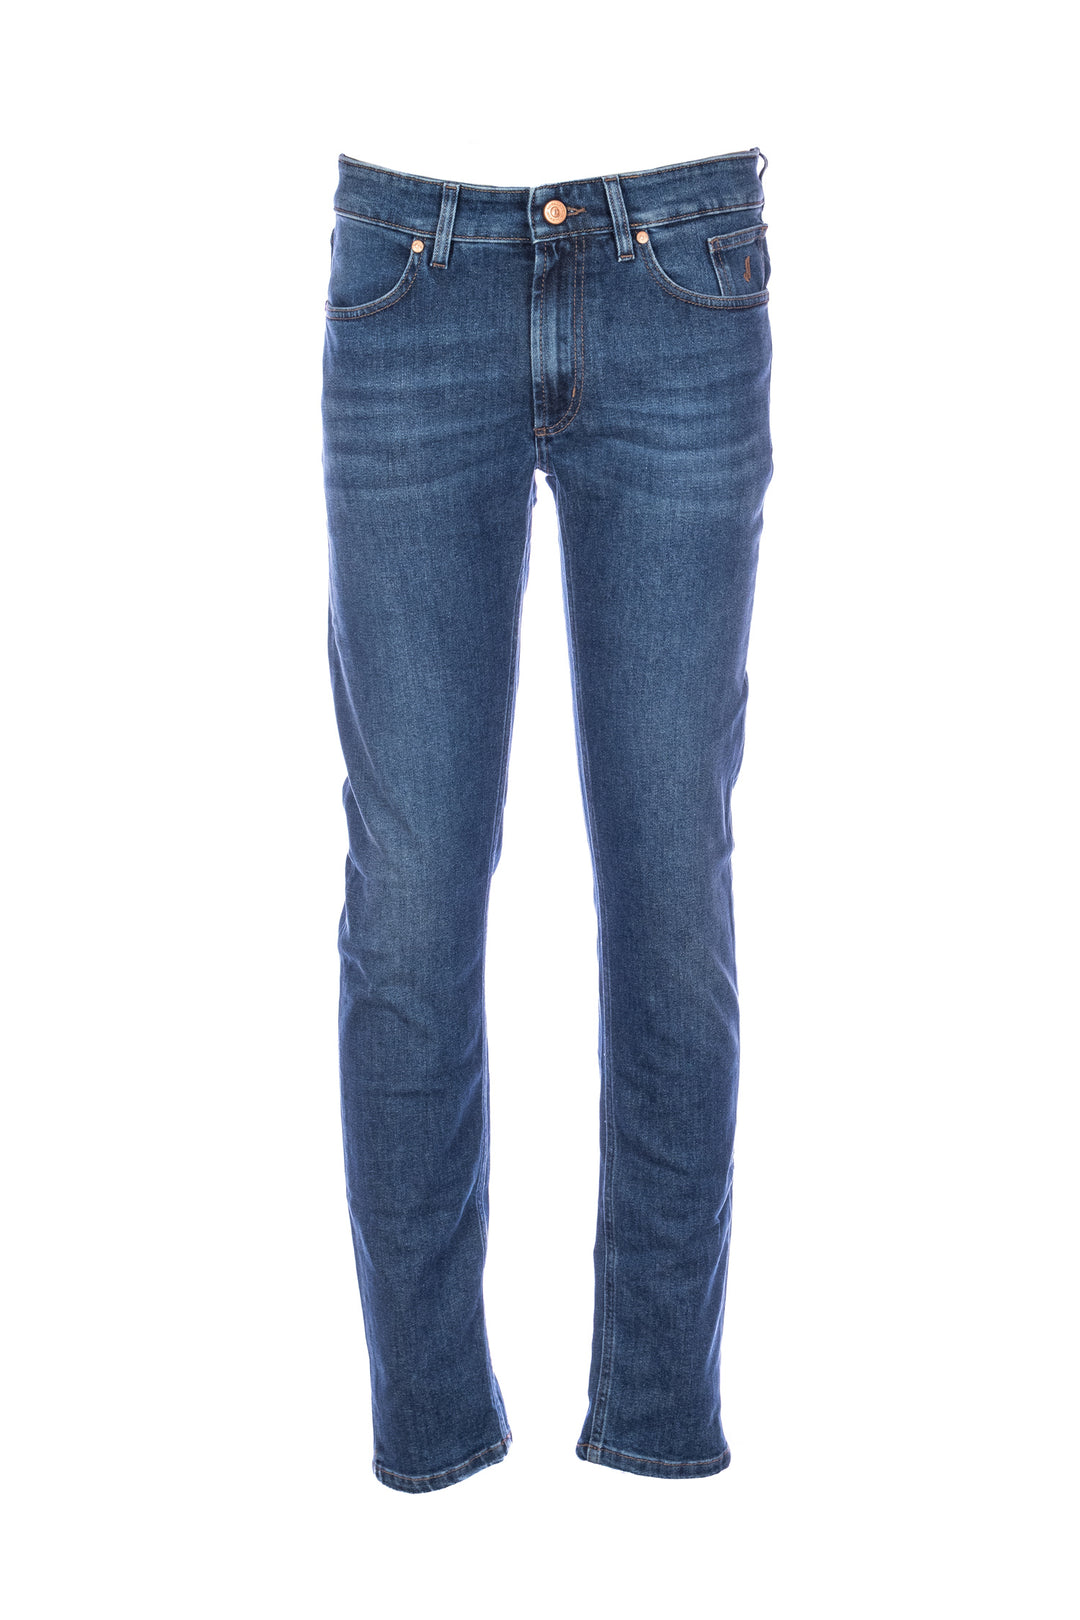 JECKERSON Jeans slim 5 tasche “JORDAN” in denim di cotone stretch lavaggio medio - Mancinelli 1954